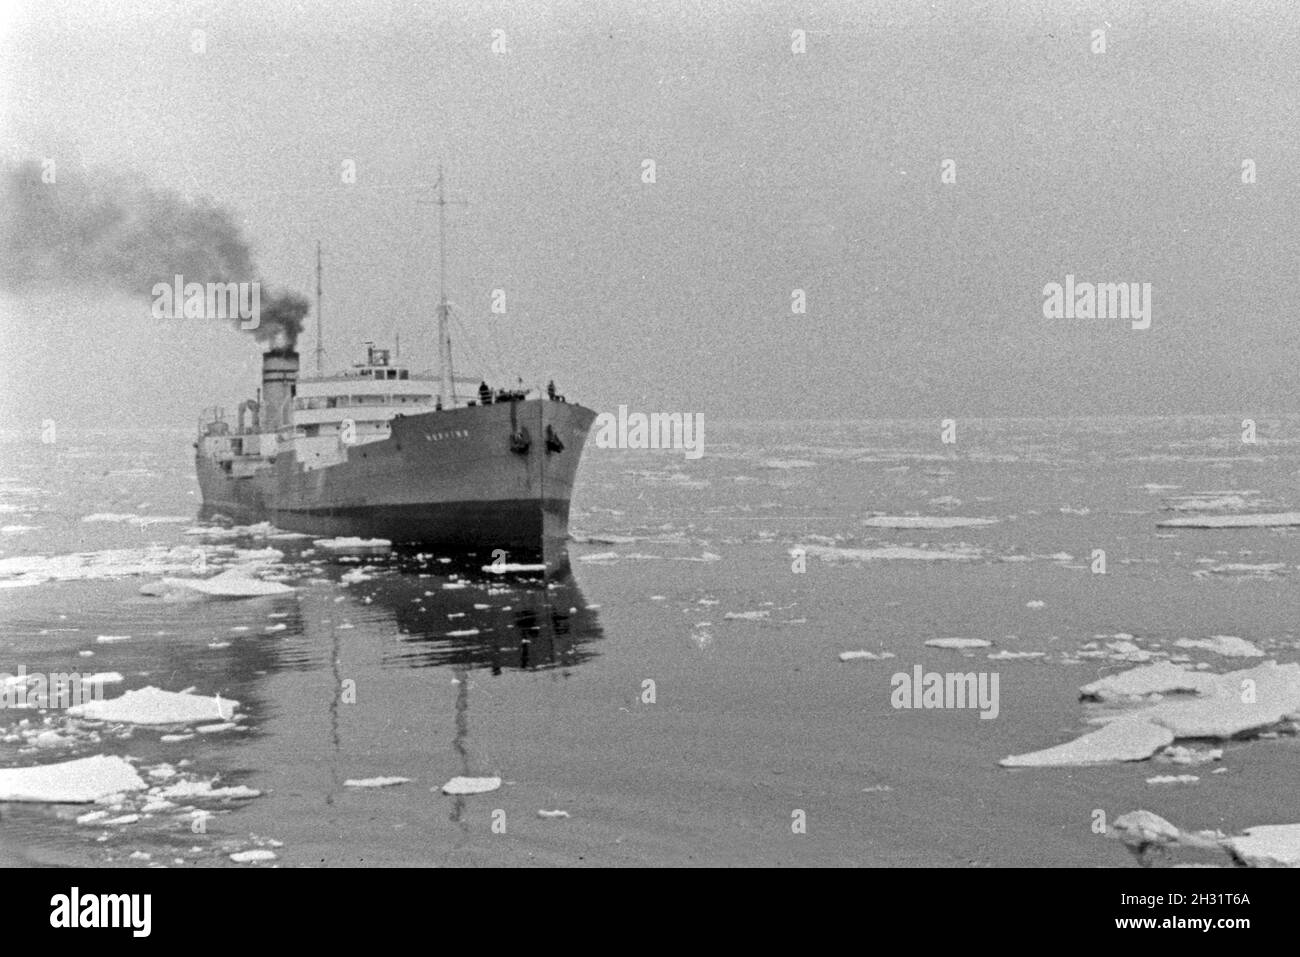 Mein Schiff der deutschen Walfangflotte im Eismeer in der Arktis, 1930er Jahre. Ein Schiff der Deutschen Walfangflotte im Arktischen Meer, 1930er Jahre. Stockfoto